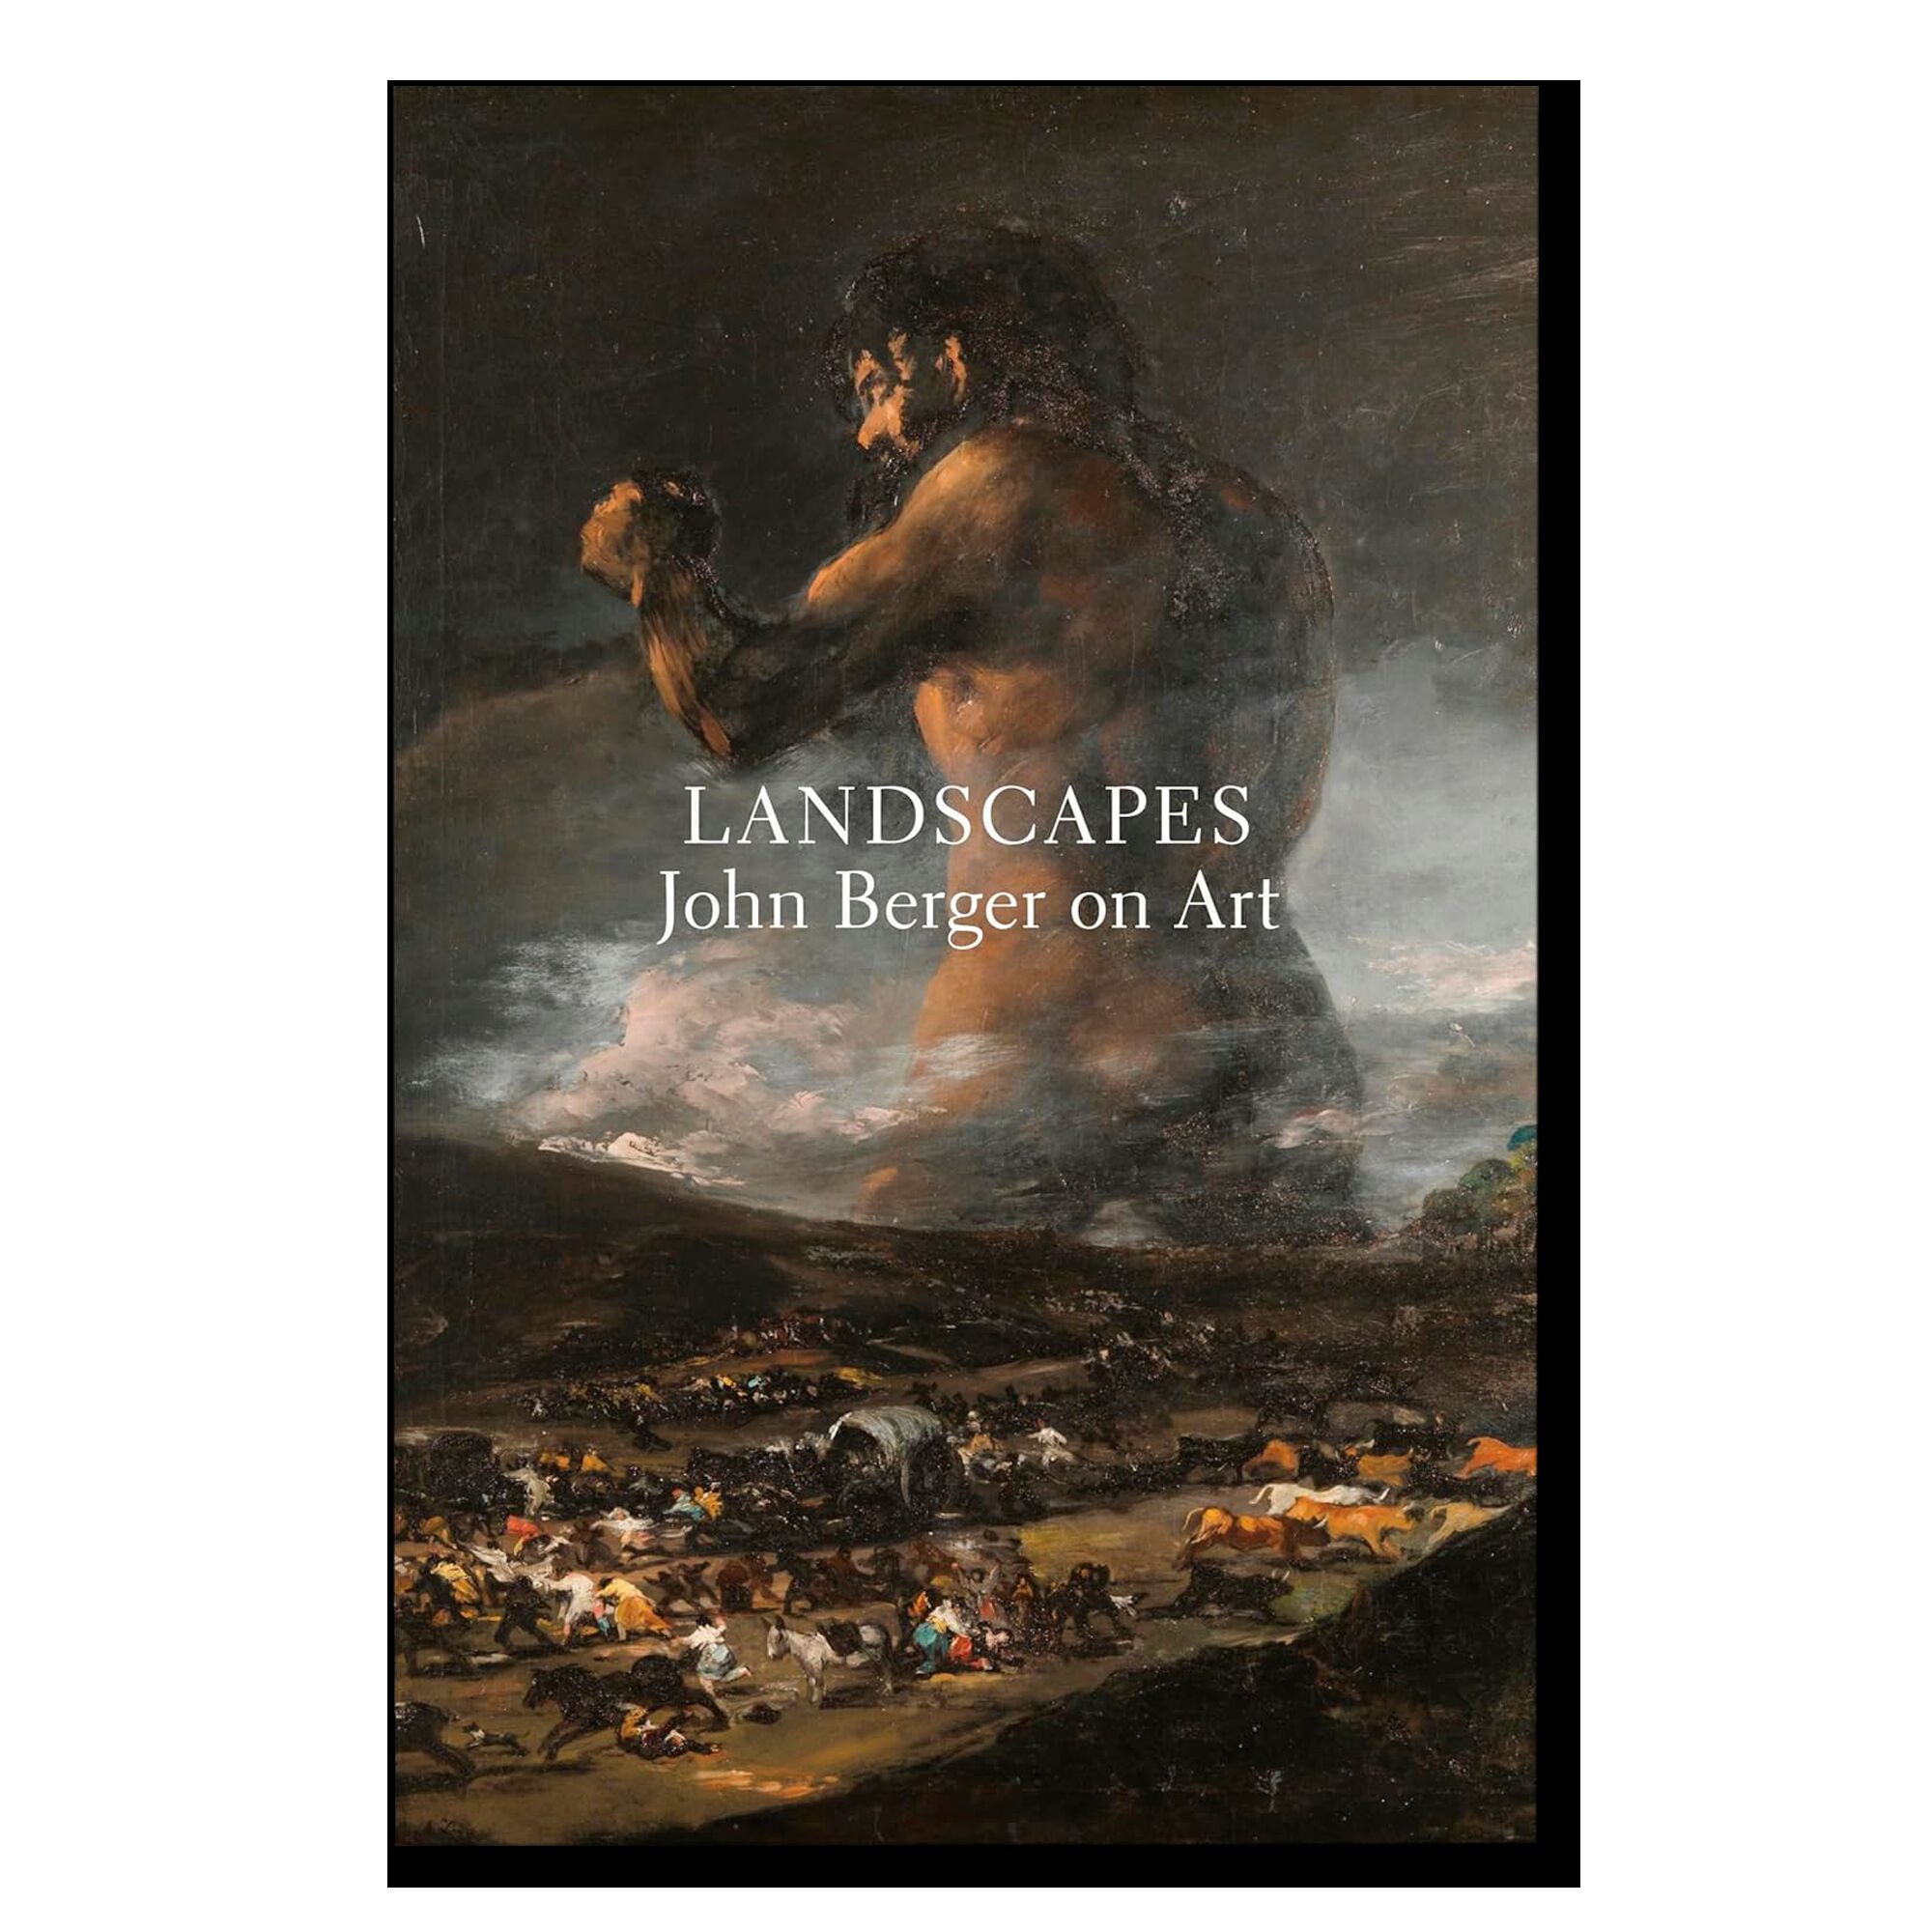 Landscapes: John Berger on Art